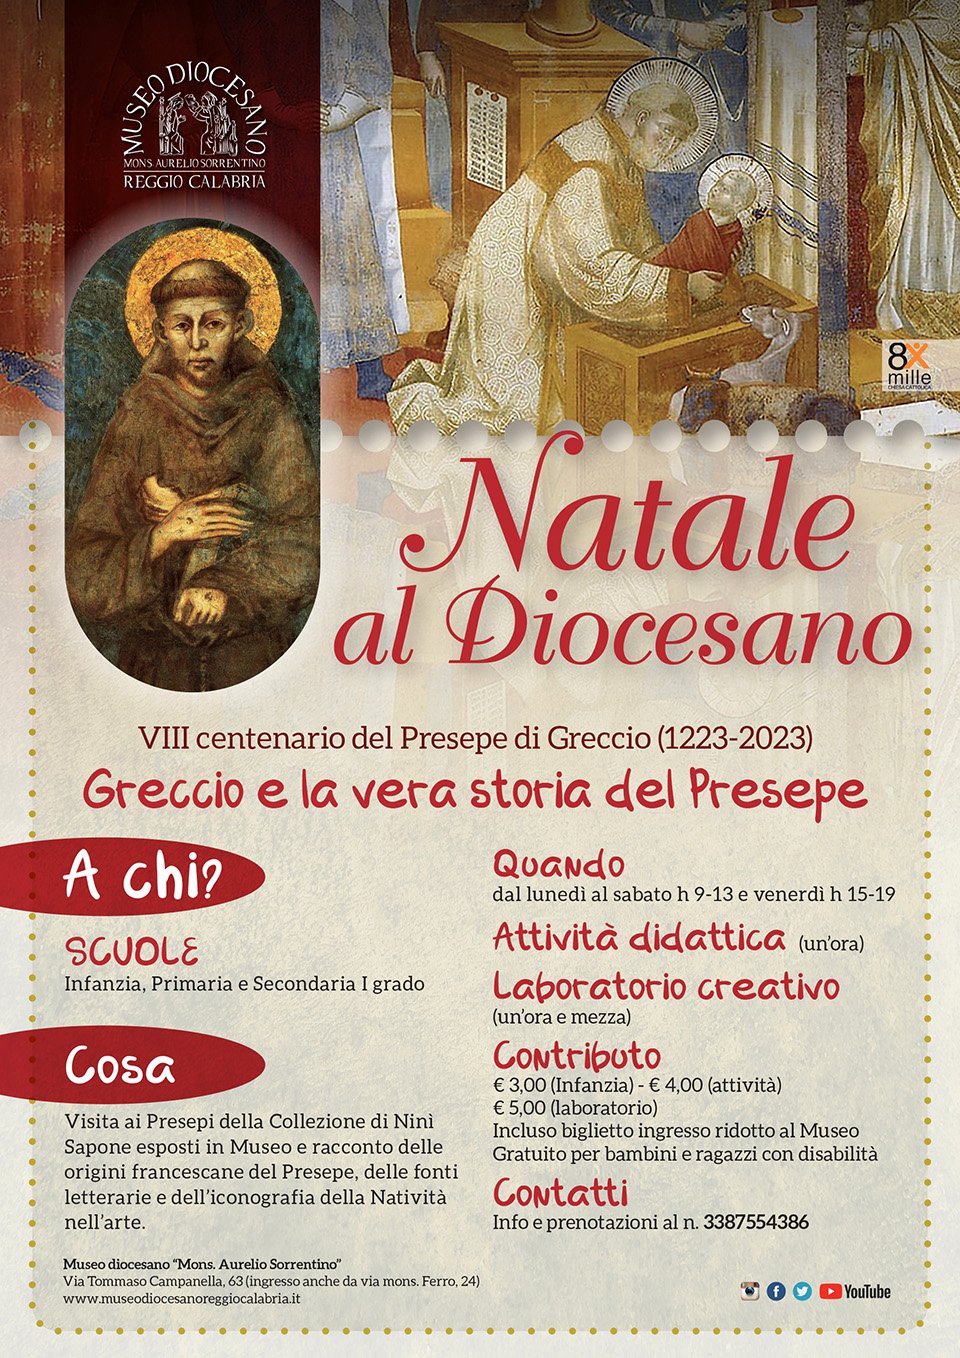 Natale 2023 al Museo diocesano di Reggio Calabria: Greccio e la vera storia del Presepe